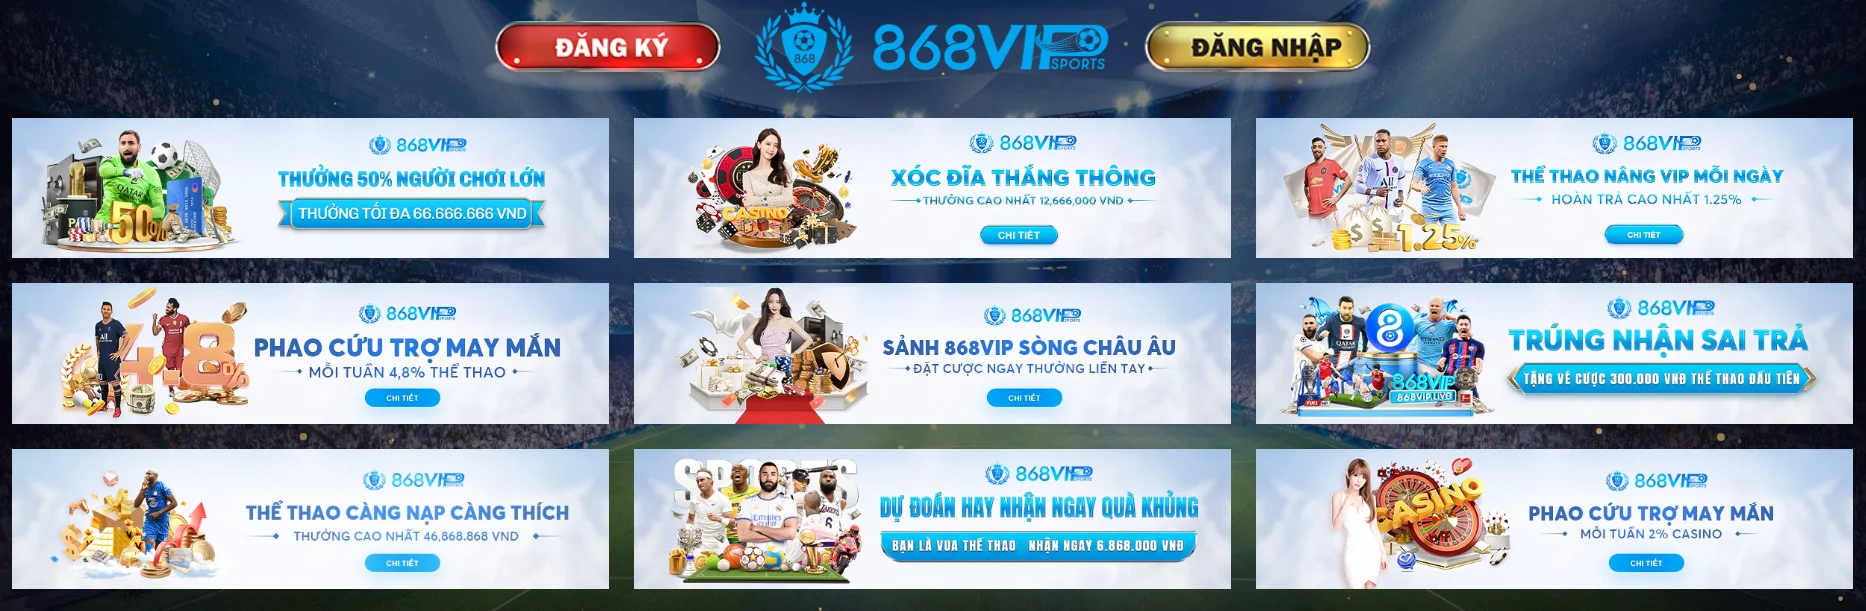 868VIP là nhà cái cá cược trực tuyến thể thao uy tín nhất